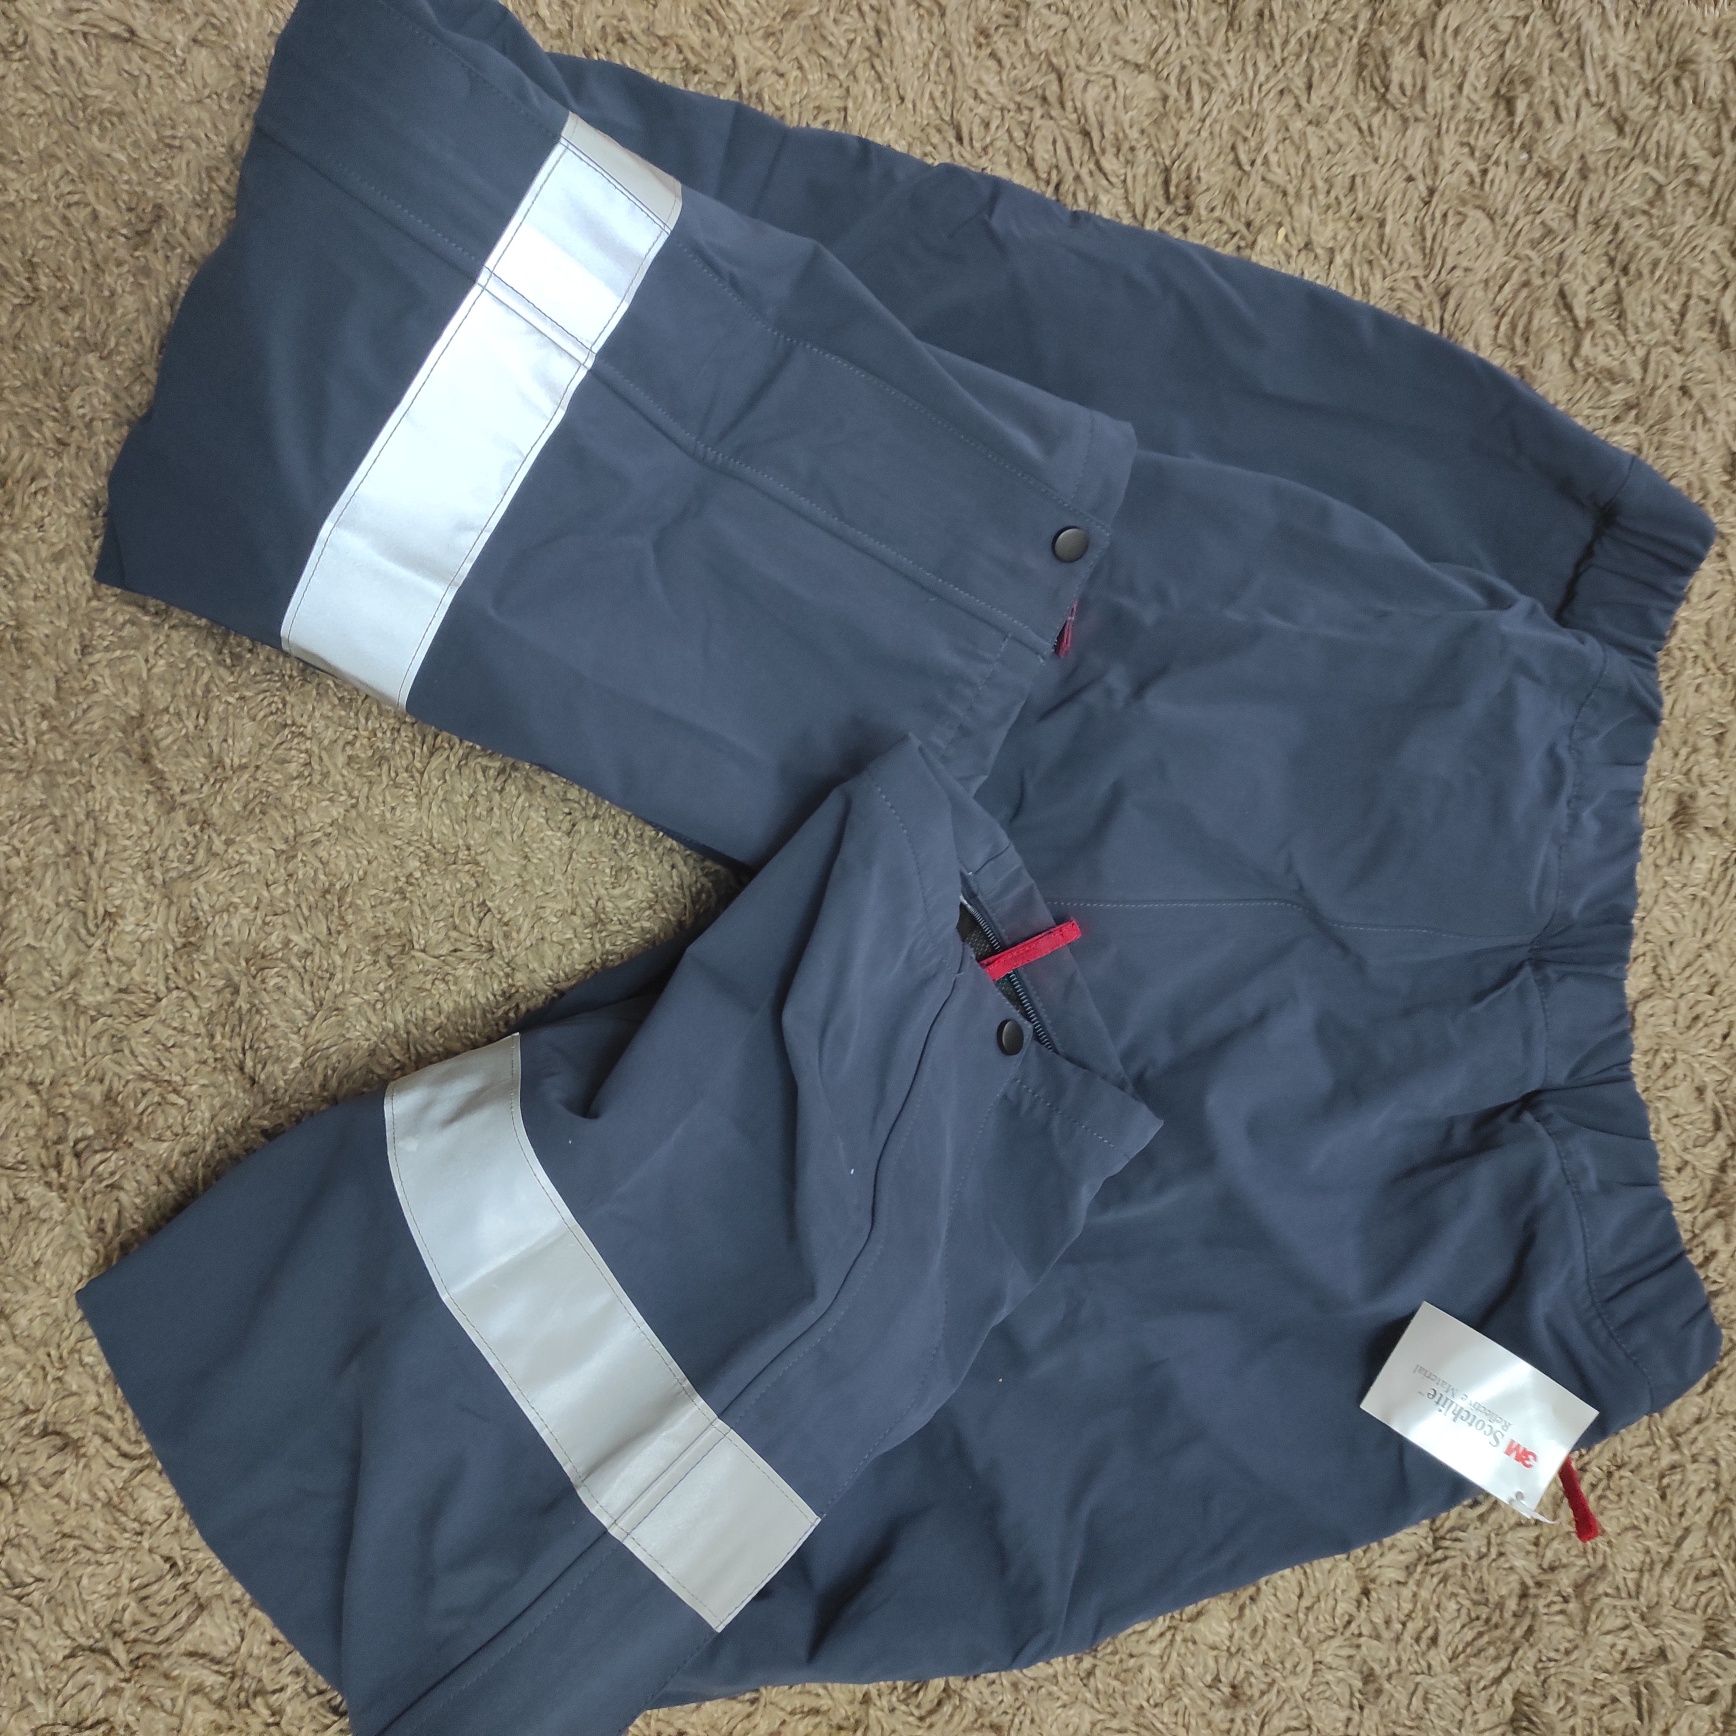 Kurtka+spodnie XL 3M Scotchlite ubiór roboczy ochronny Reflective Mat